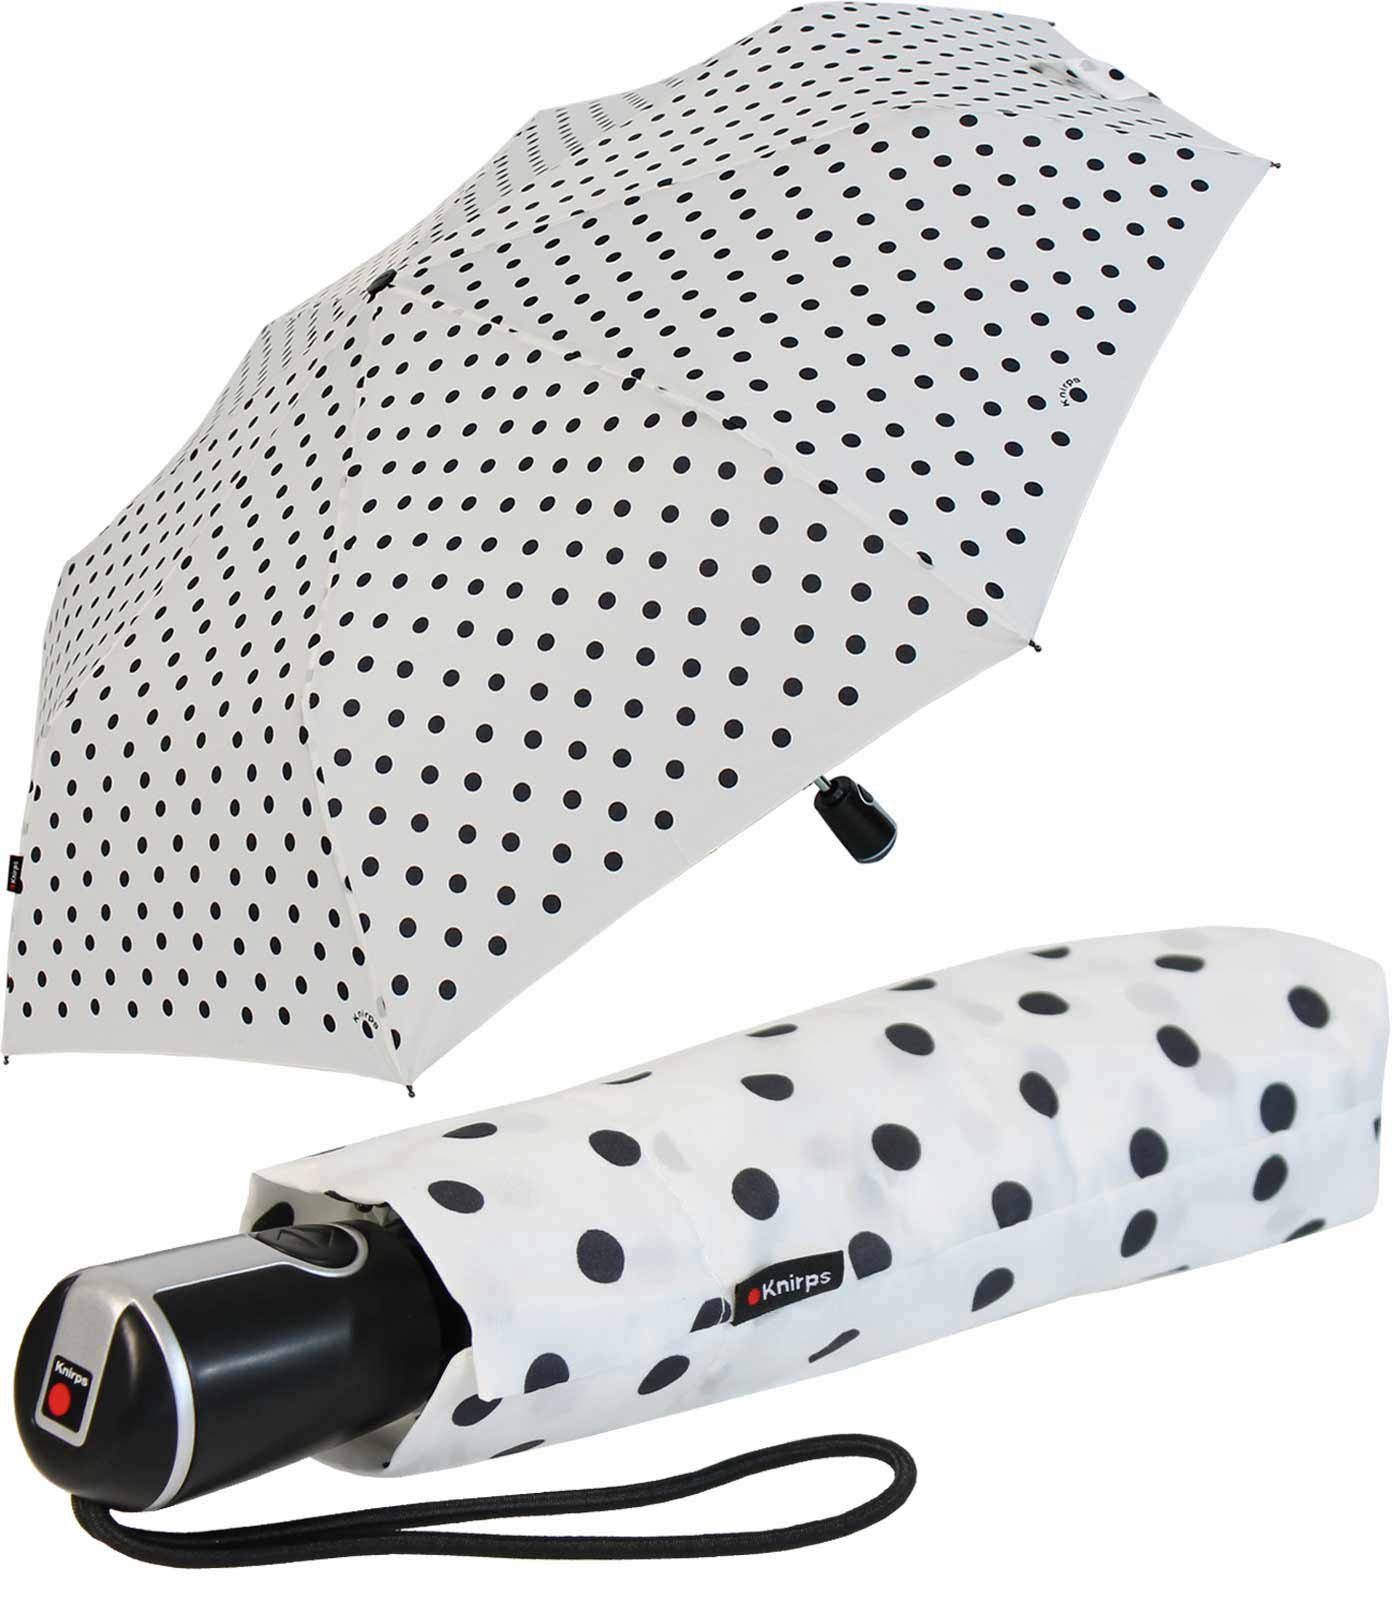 Large mit Knirps® Auf-Zu-Automatik der Polka stabile - weiß-schwarz große, Begleiter Taschenregenschirm Duomatic Dots,